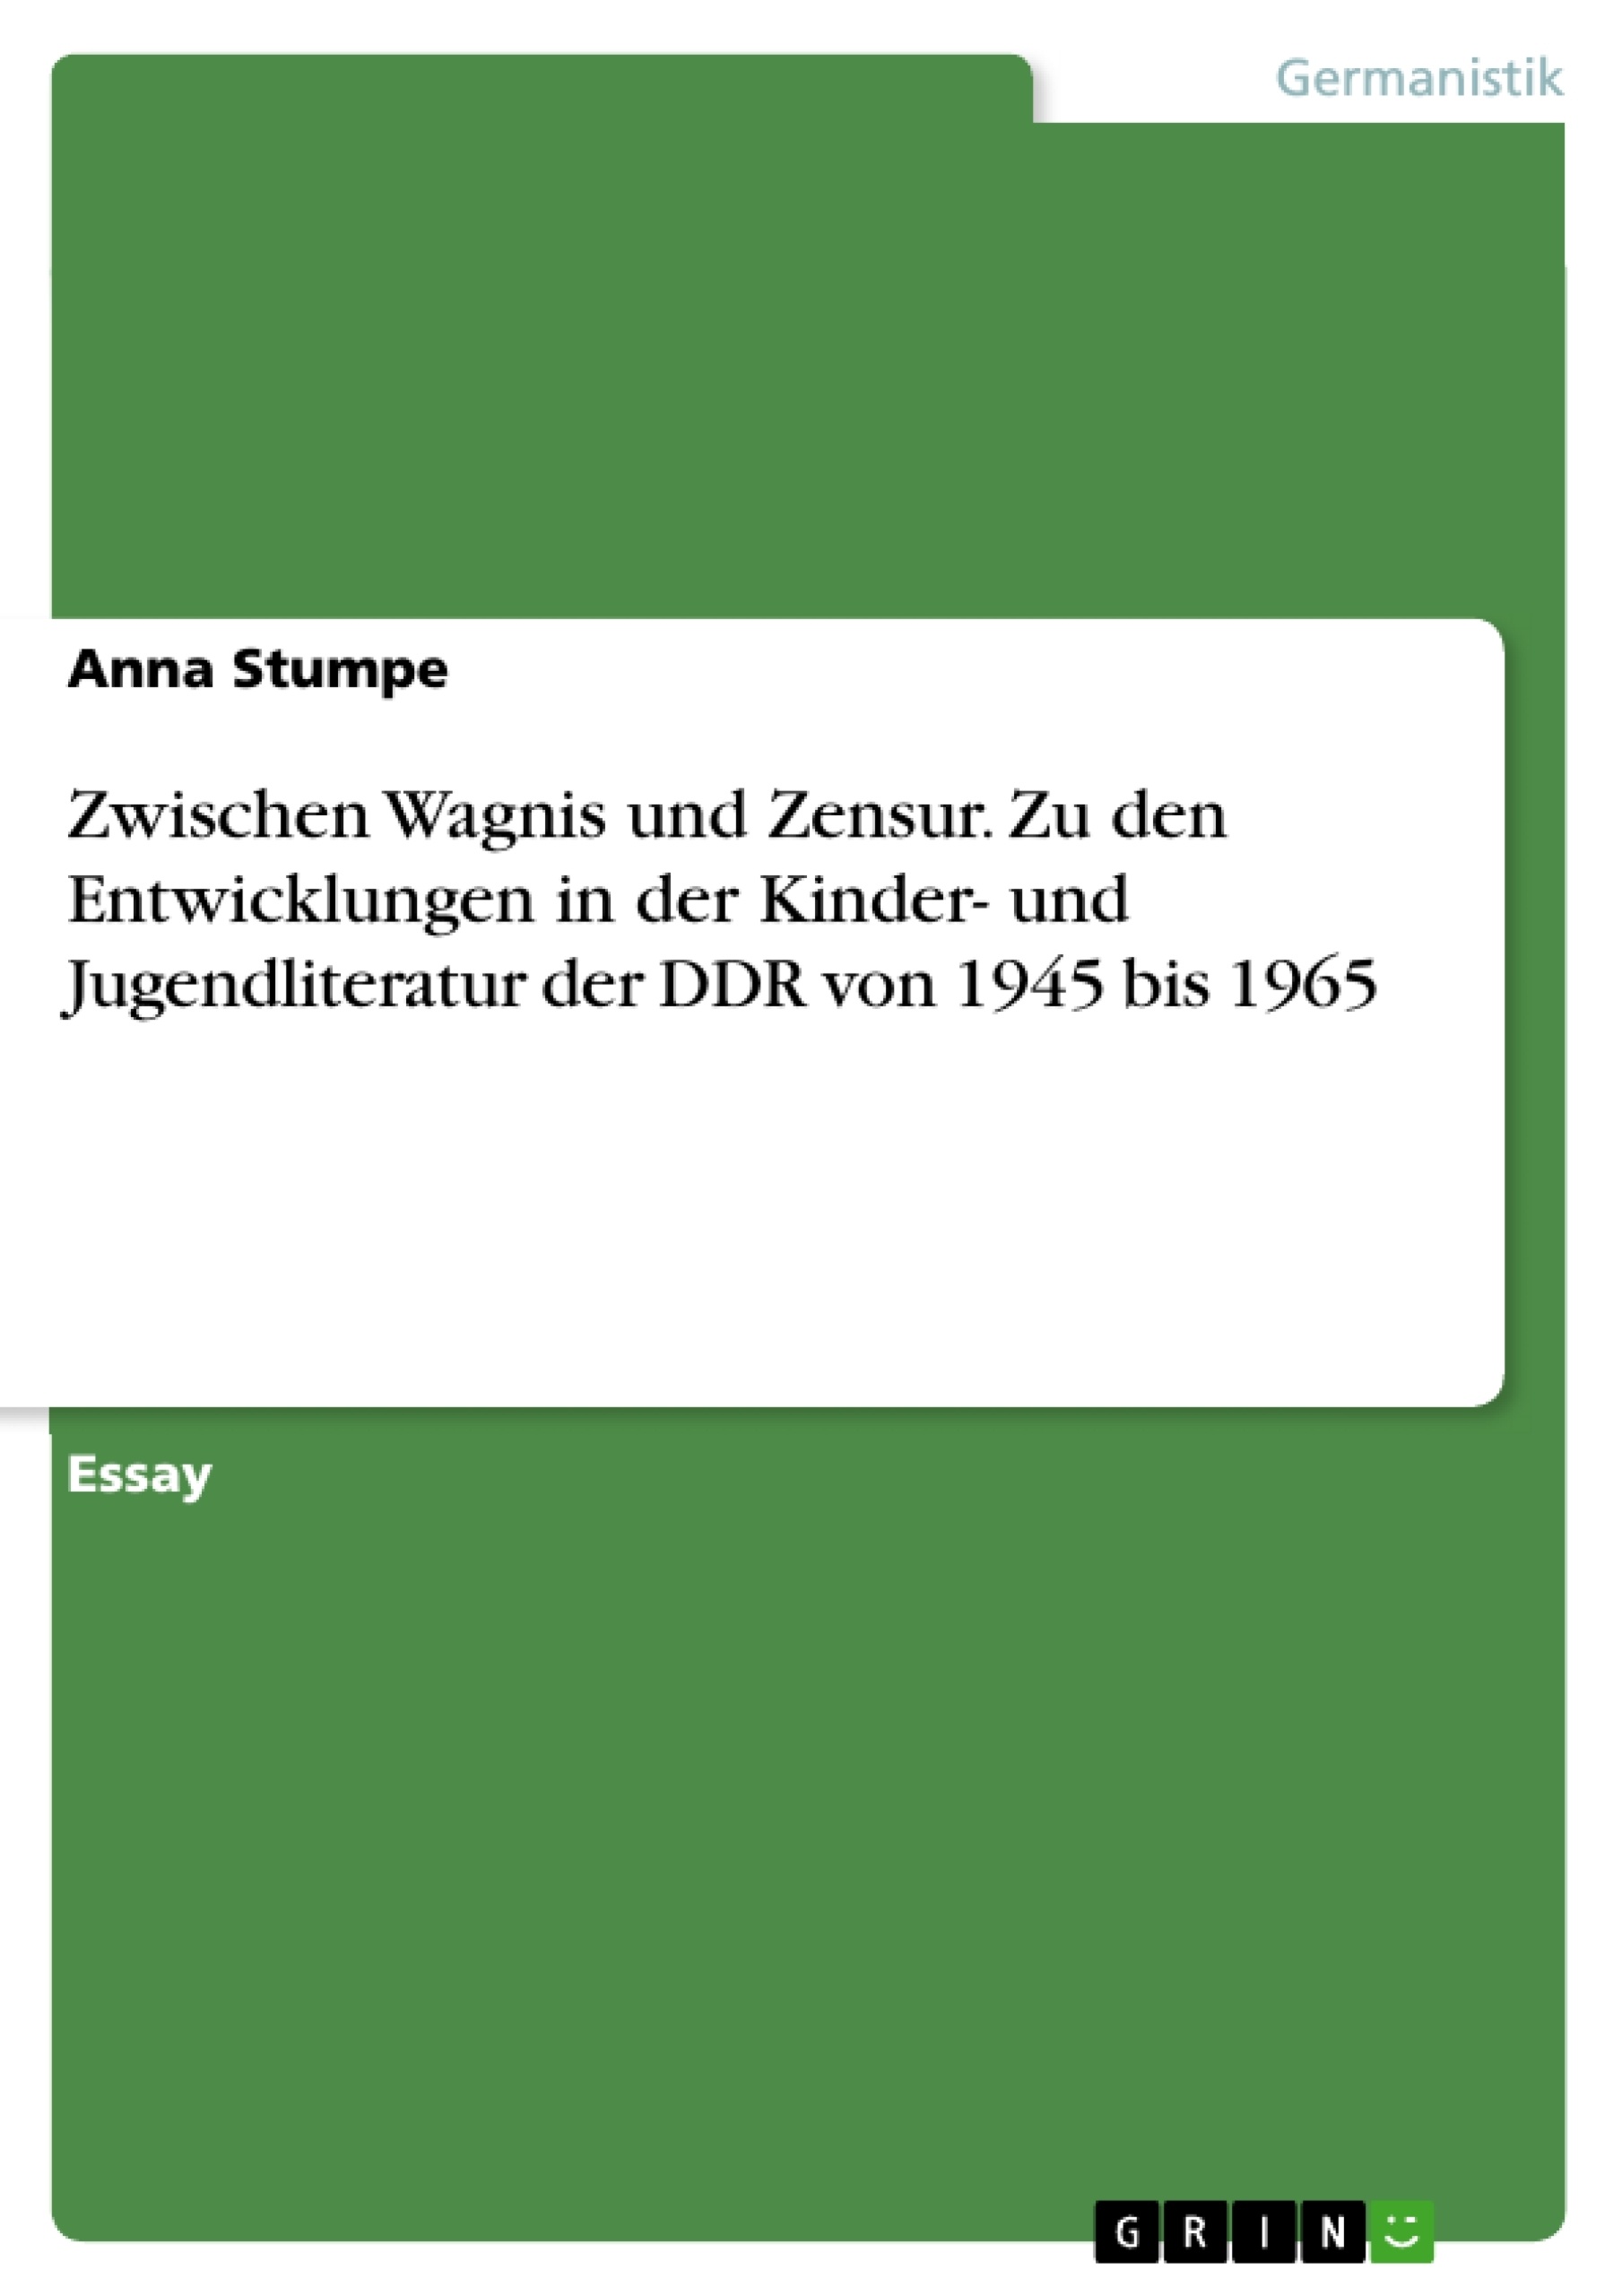 Título: Zwischen Wagnis und Zensur. Zu den Entwicklungen in der Kinder- und Jugendliteratur der DDR von 1945 bis 1965